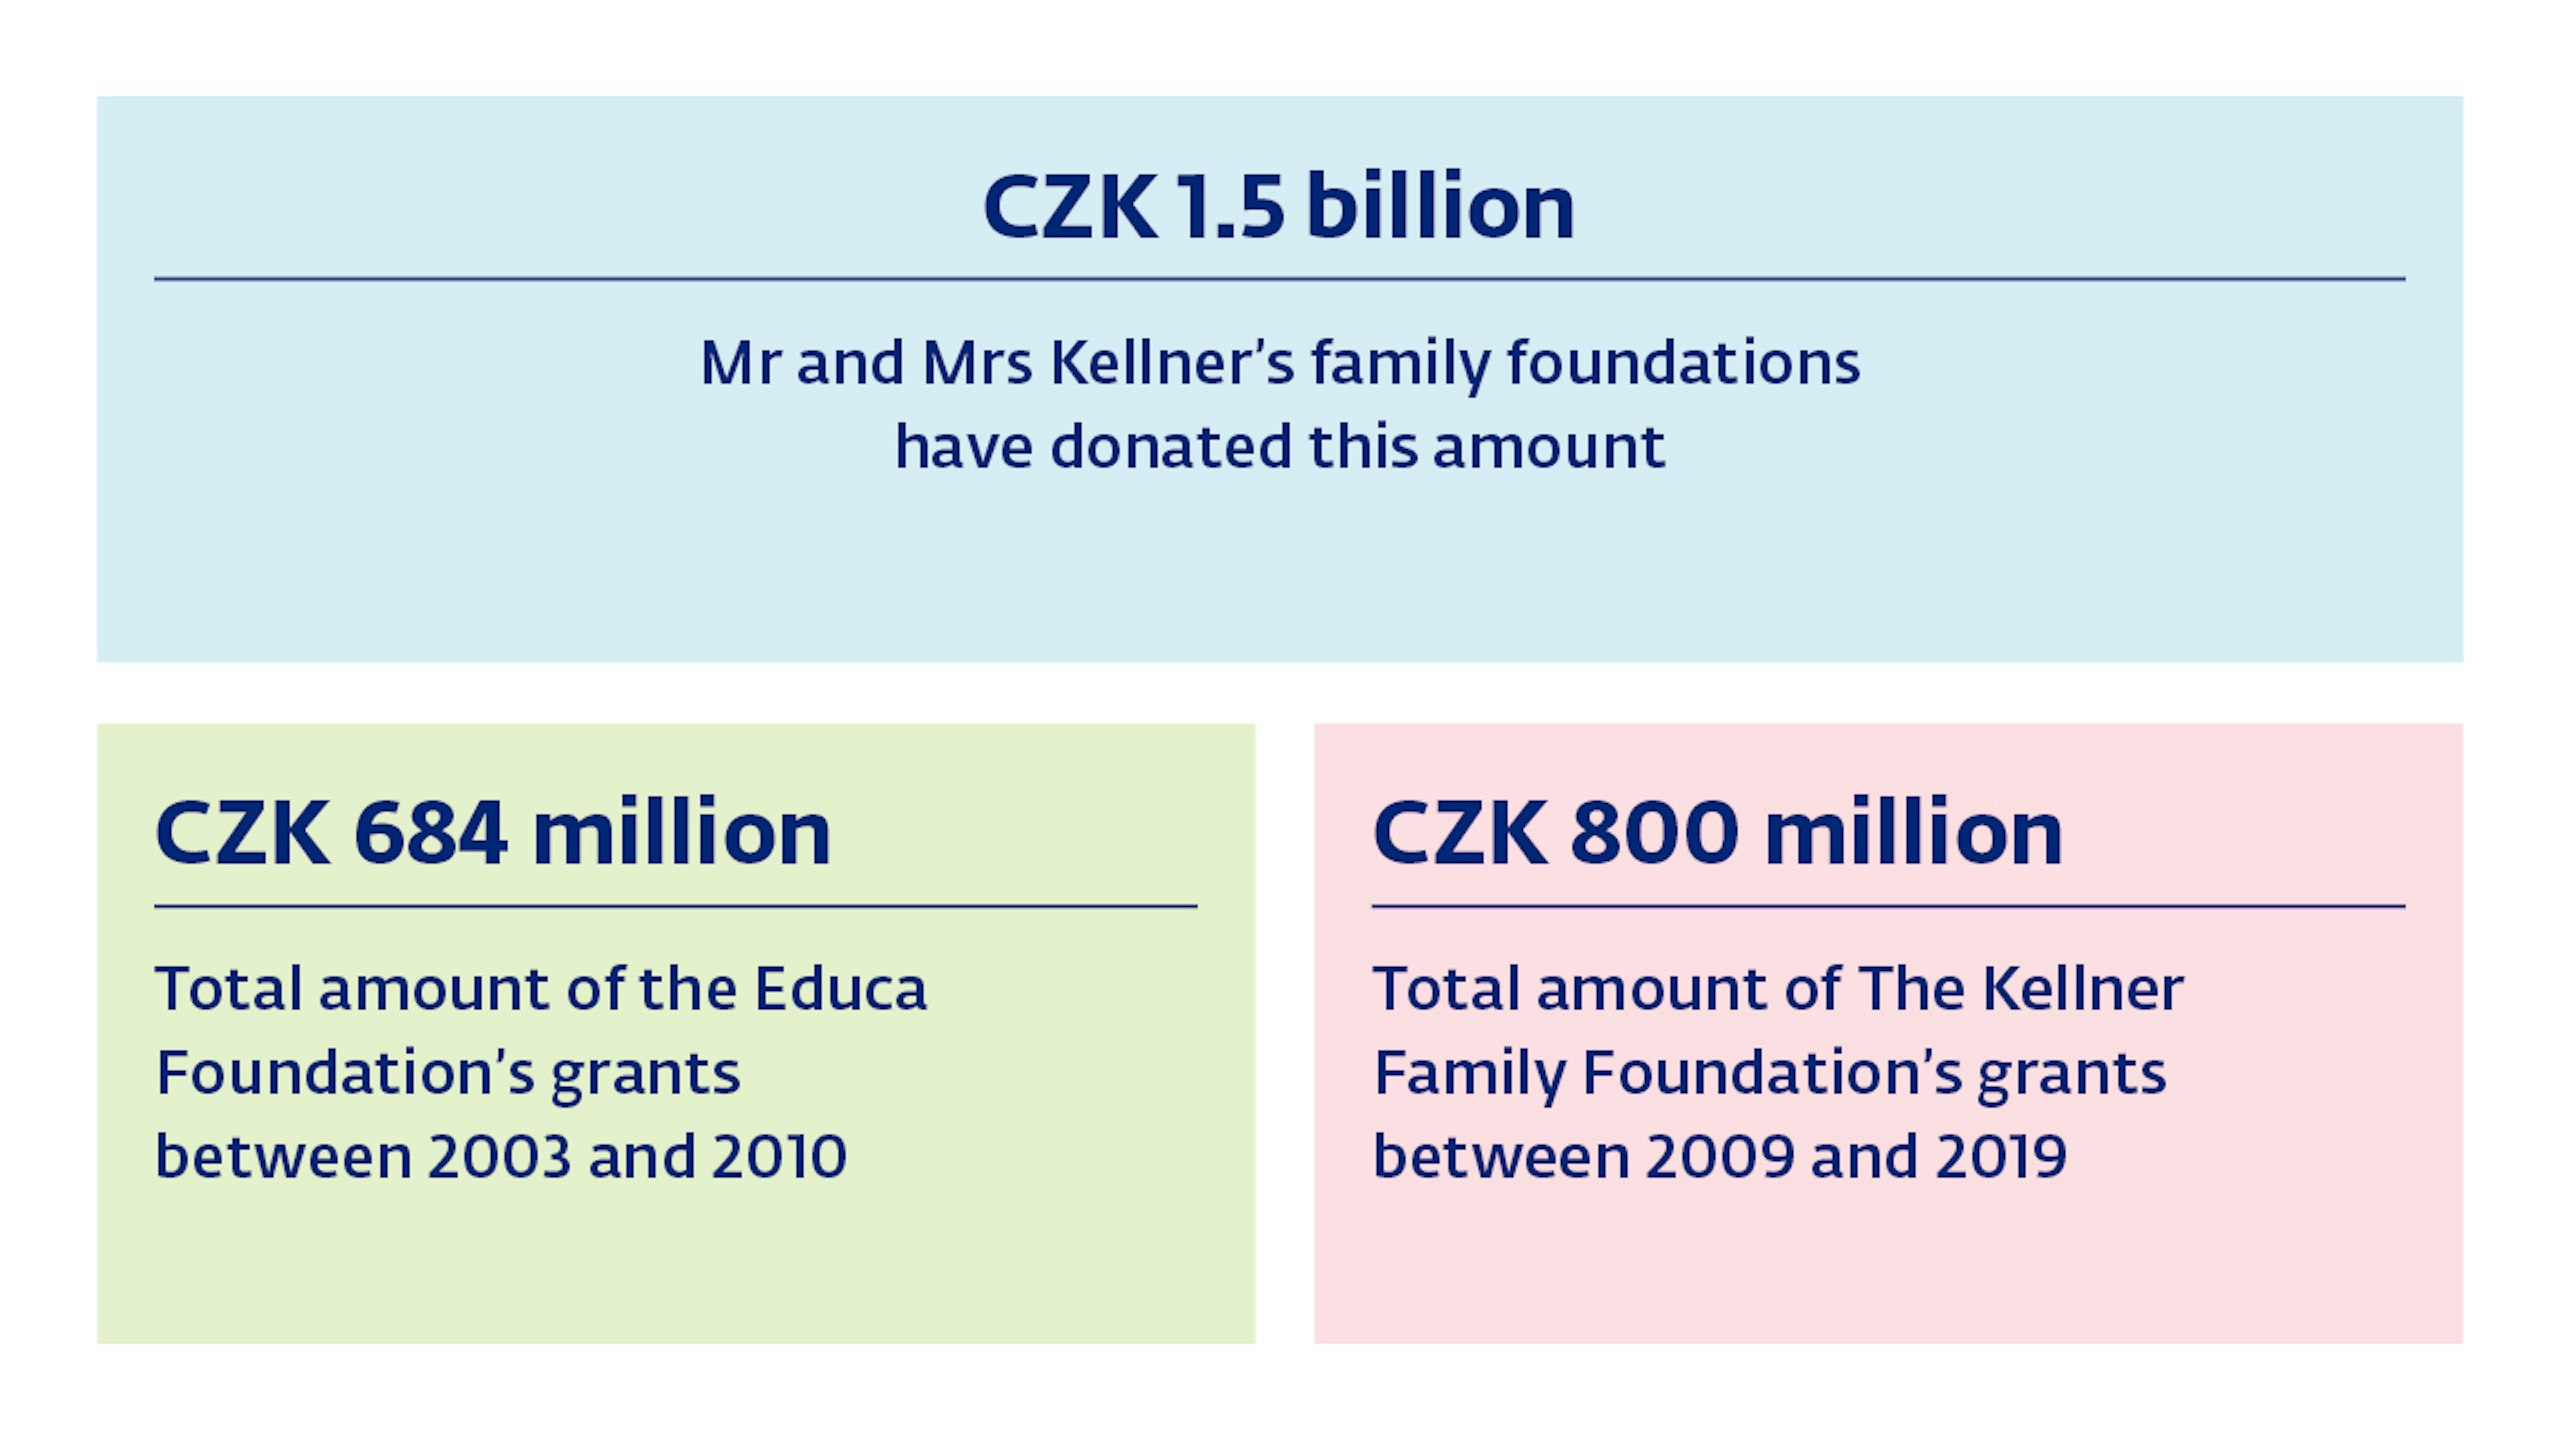 Rodinná nadace manželů Kellnerových v roce 2019: štědrá podpora pro 97 středoškoláků, 61 univerzitních studentů a 860 učitelů veřejných ZŠ